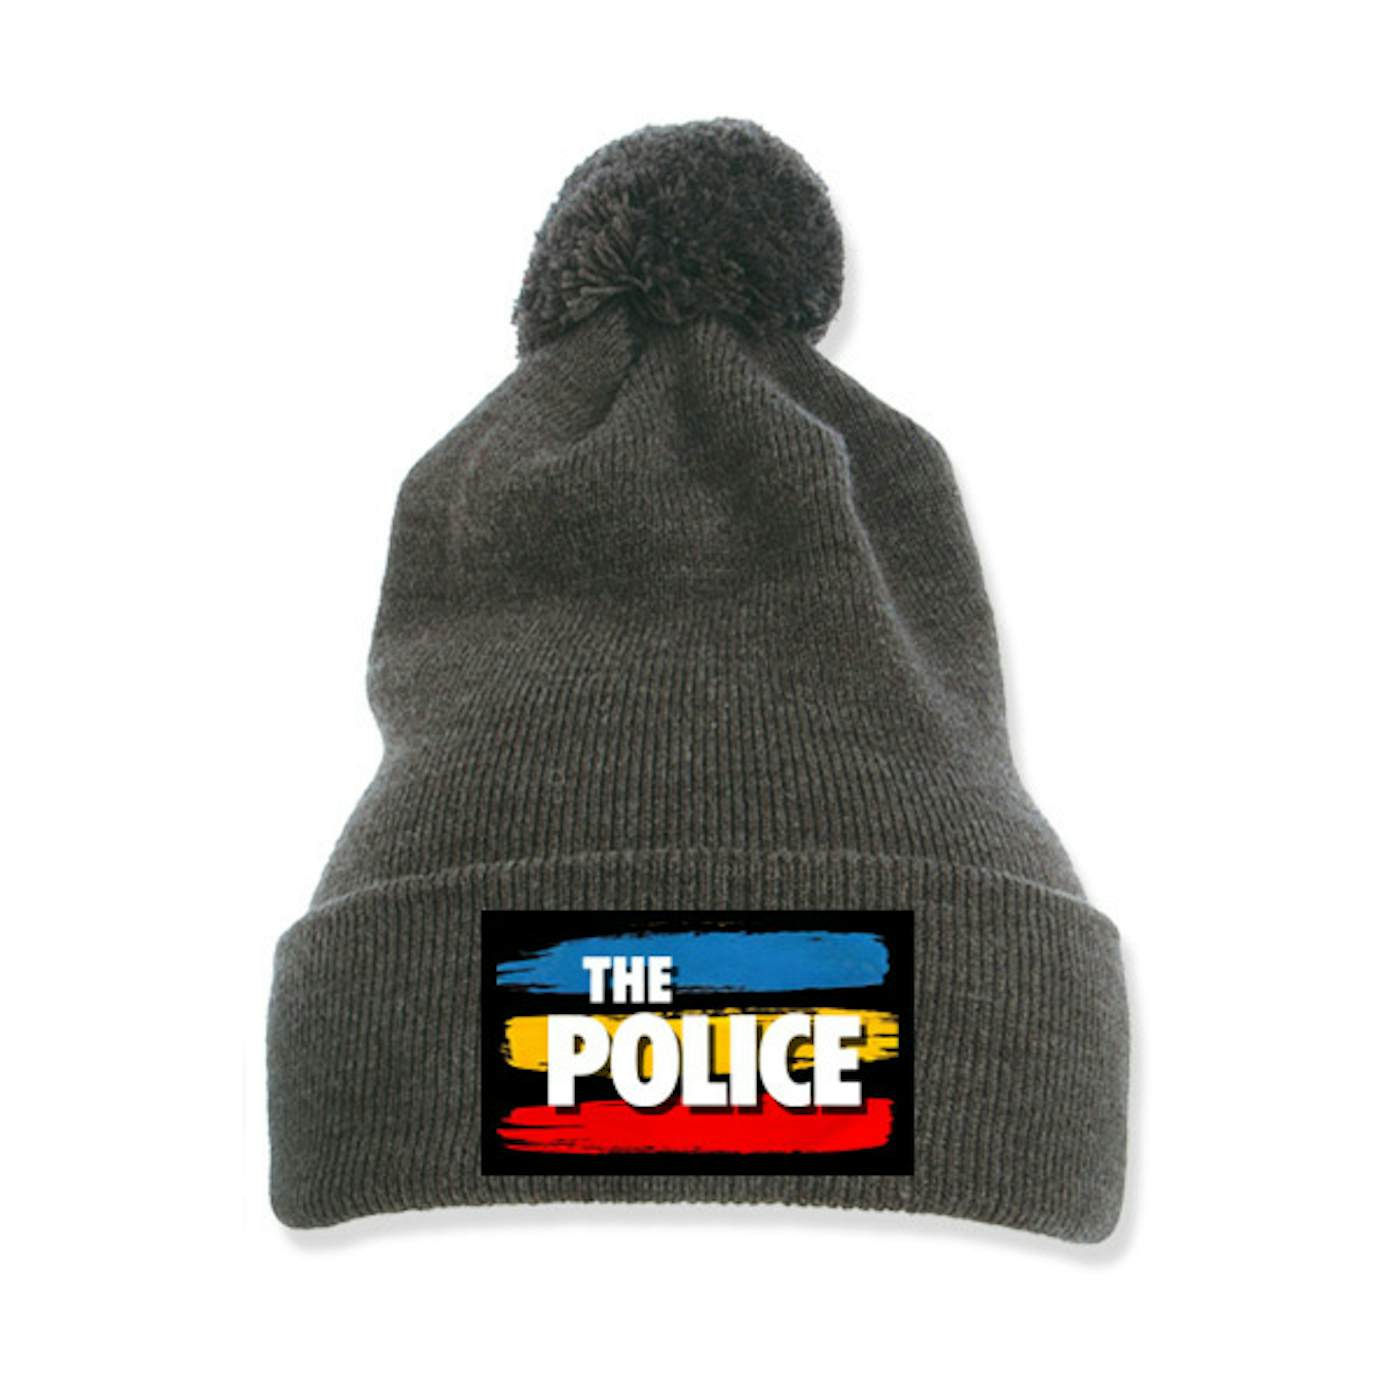 The Police Pom-Pom Knit Beanie